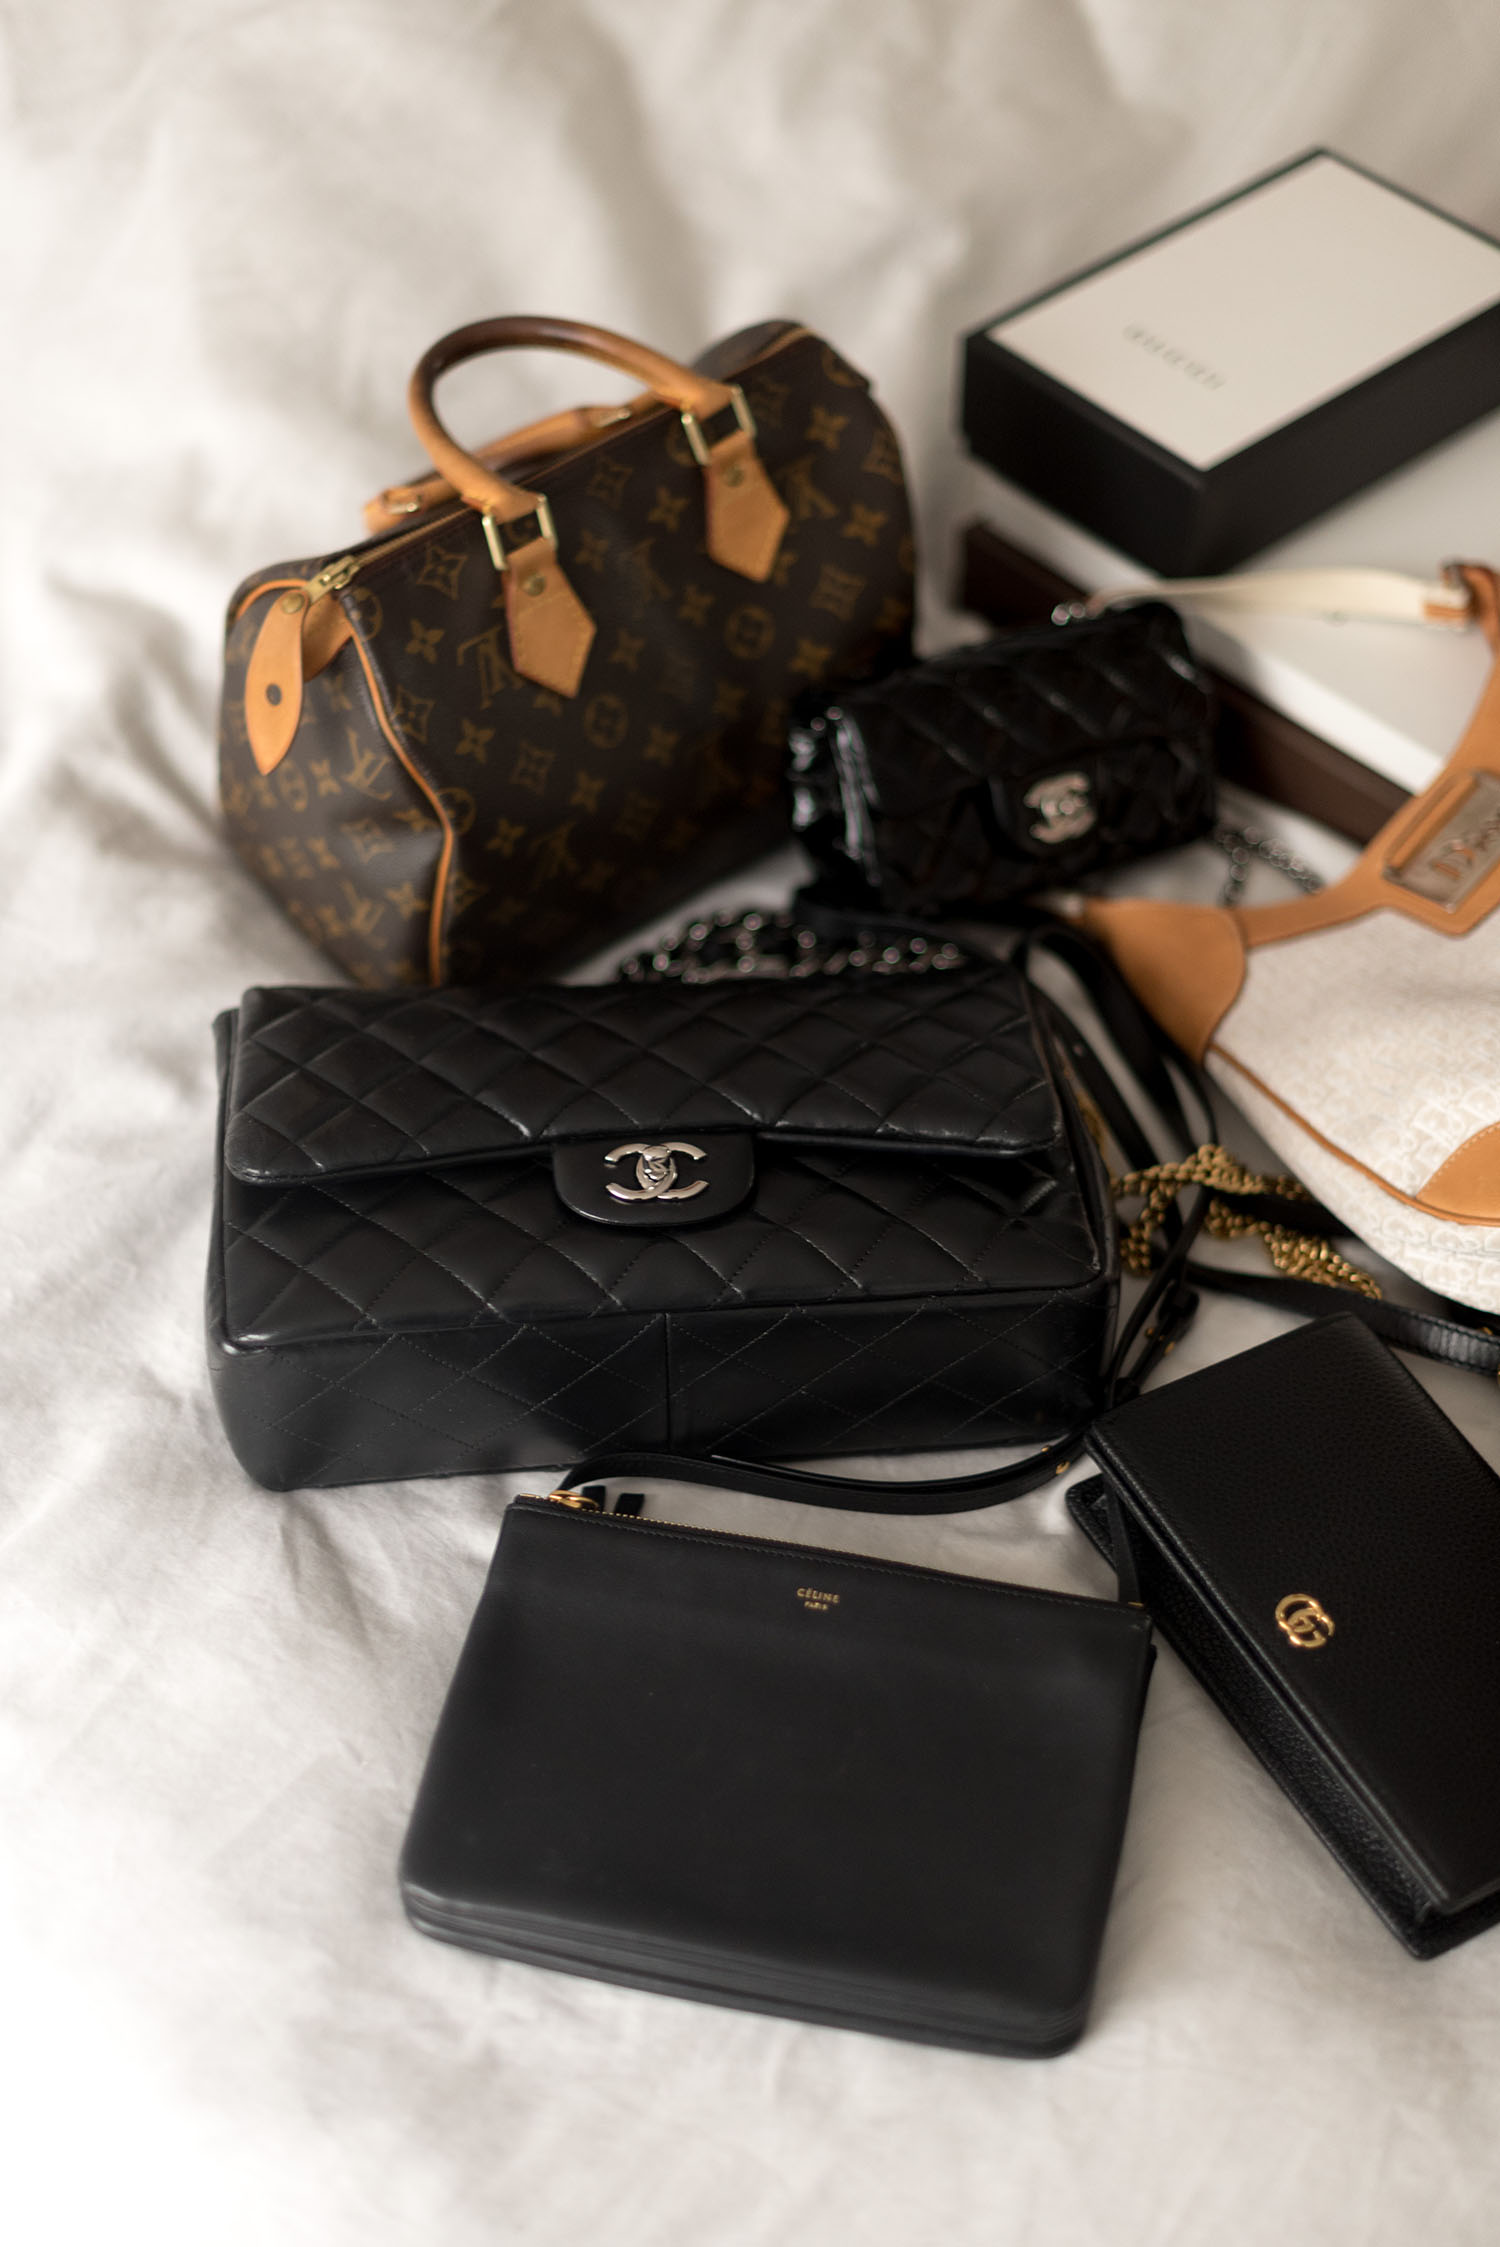 Coco & Vera - Chanel jumbo quilted handbag, Louis Vuitton Speedy 25 handbag, Celine trio bag